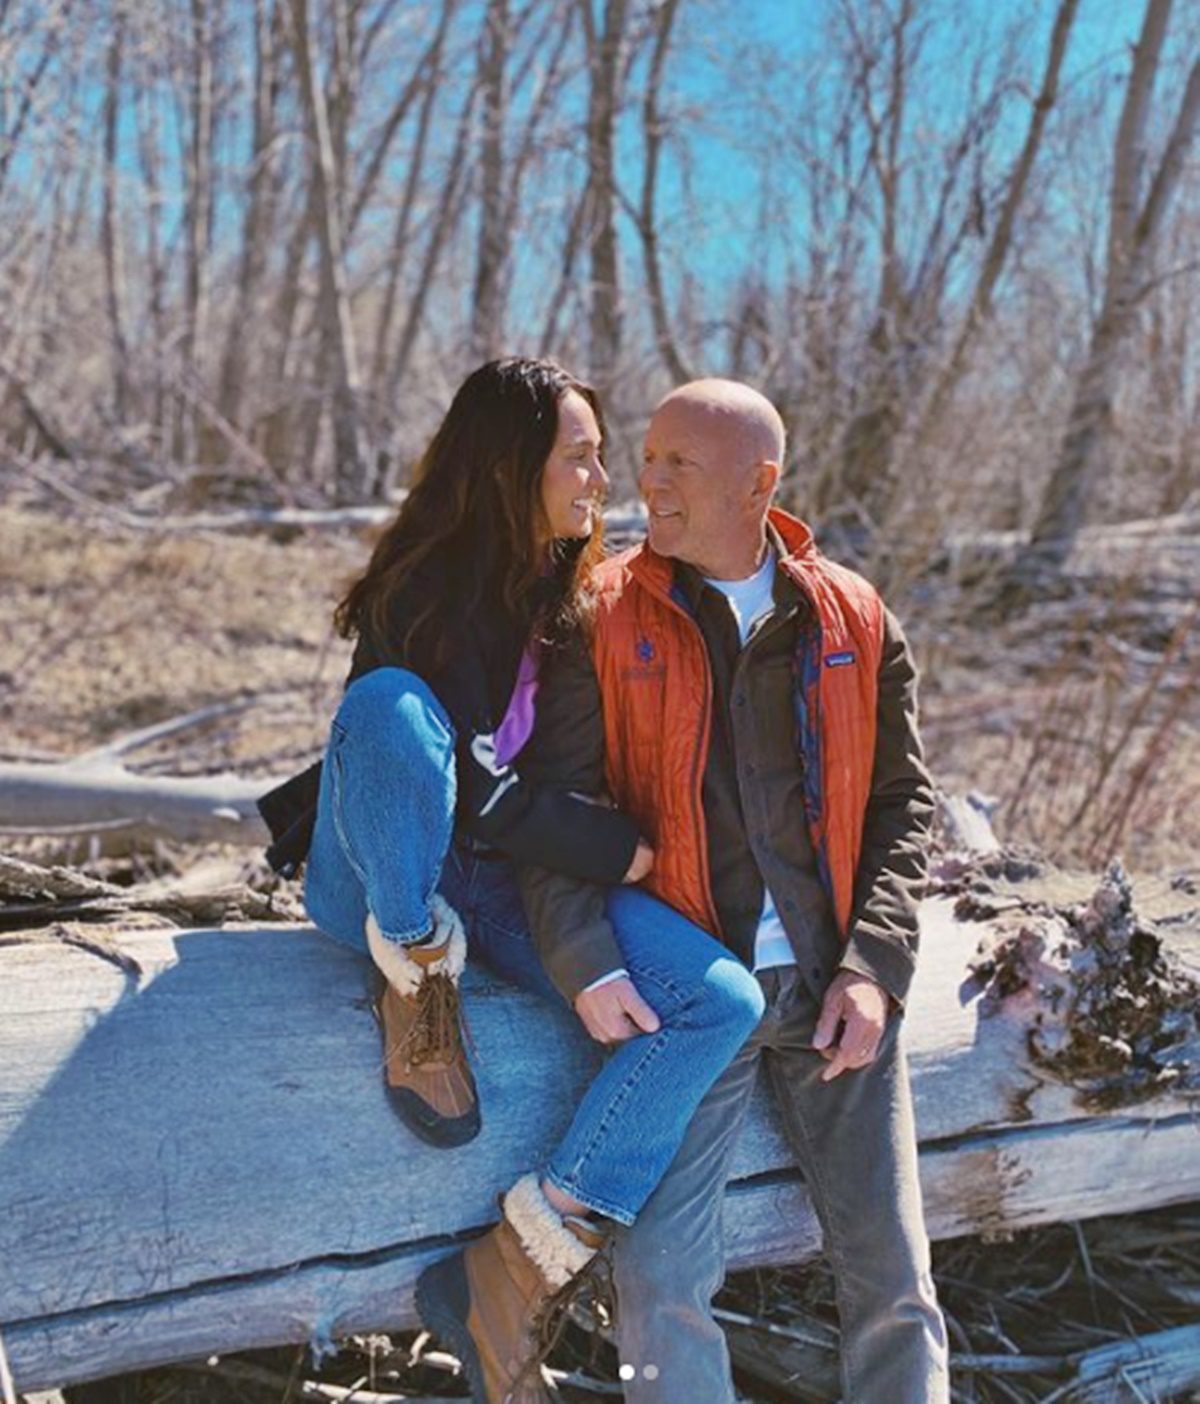 Felesége friss fotót posztolt a súlyos beteg Bruce Willisről